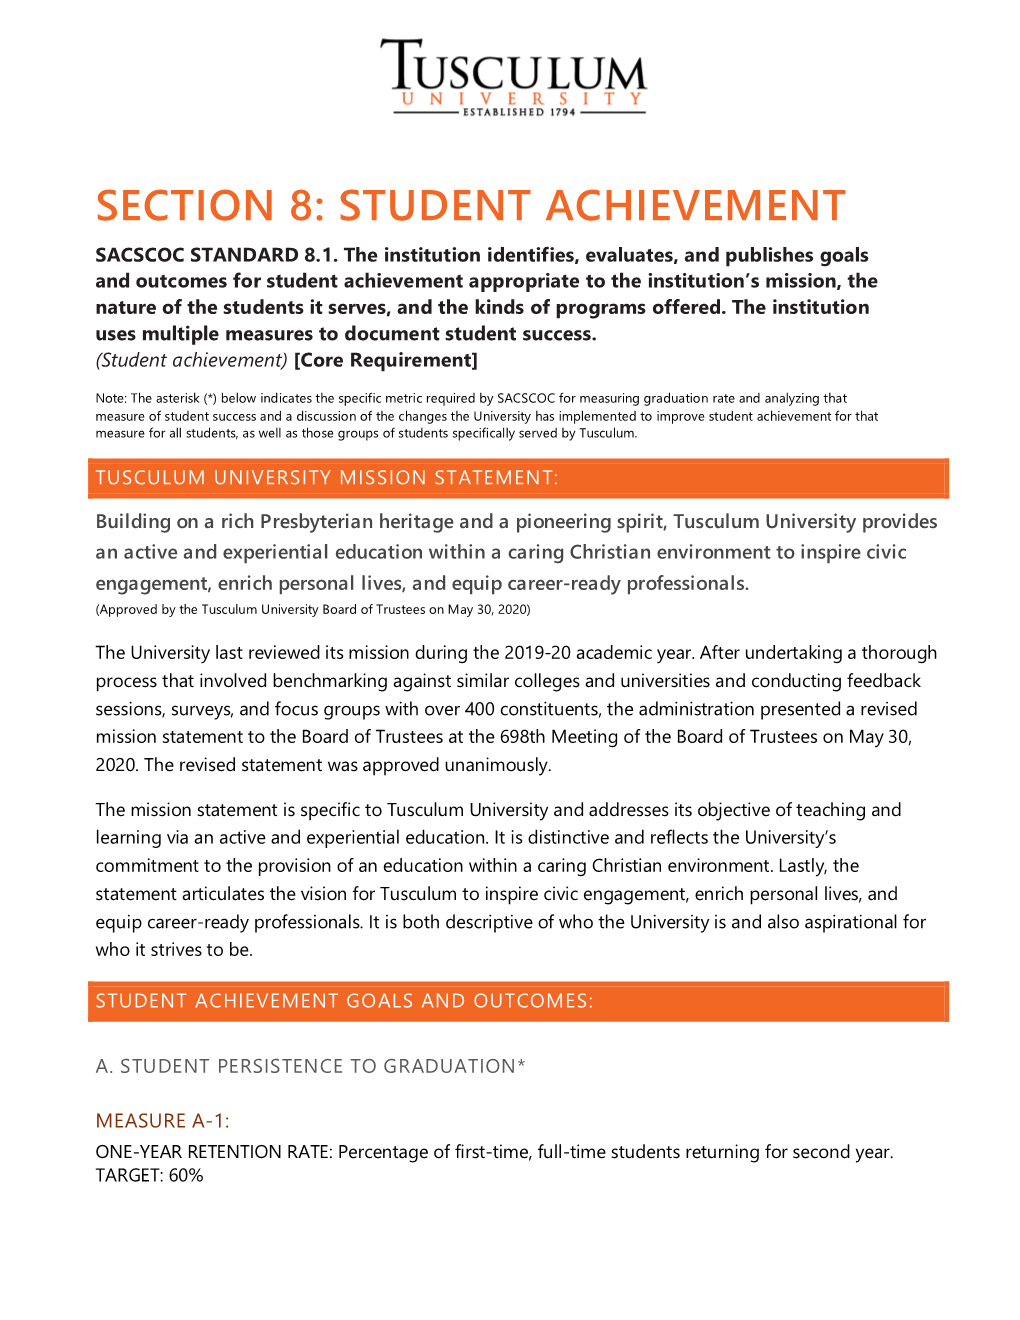 Section 8: Student Achievement Sacscoc Standard 8.1